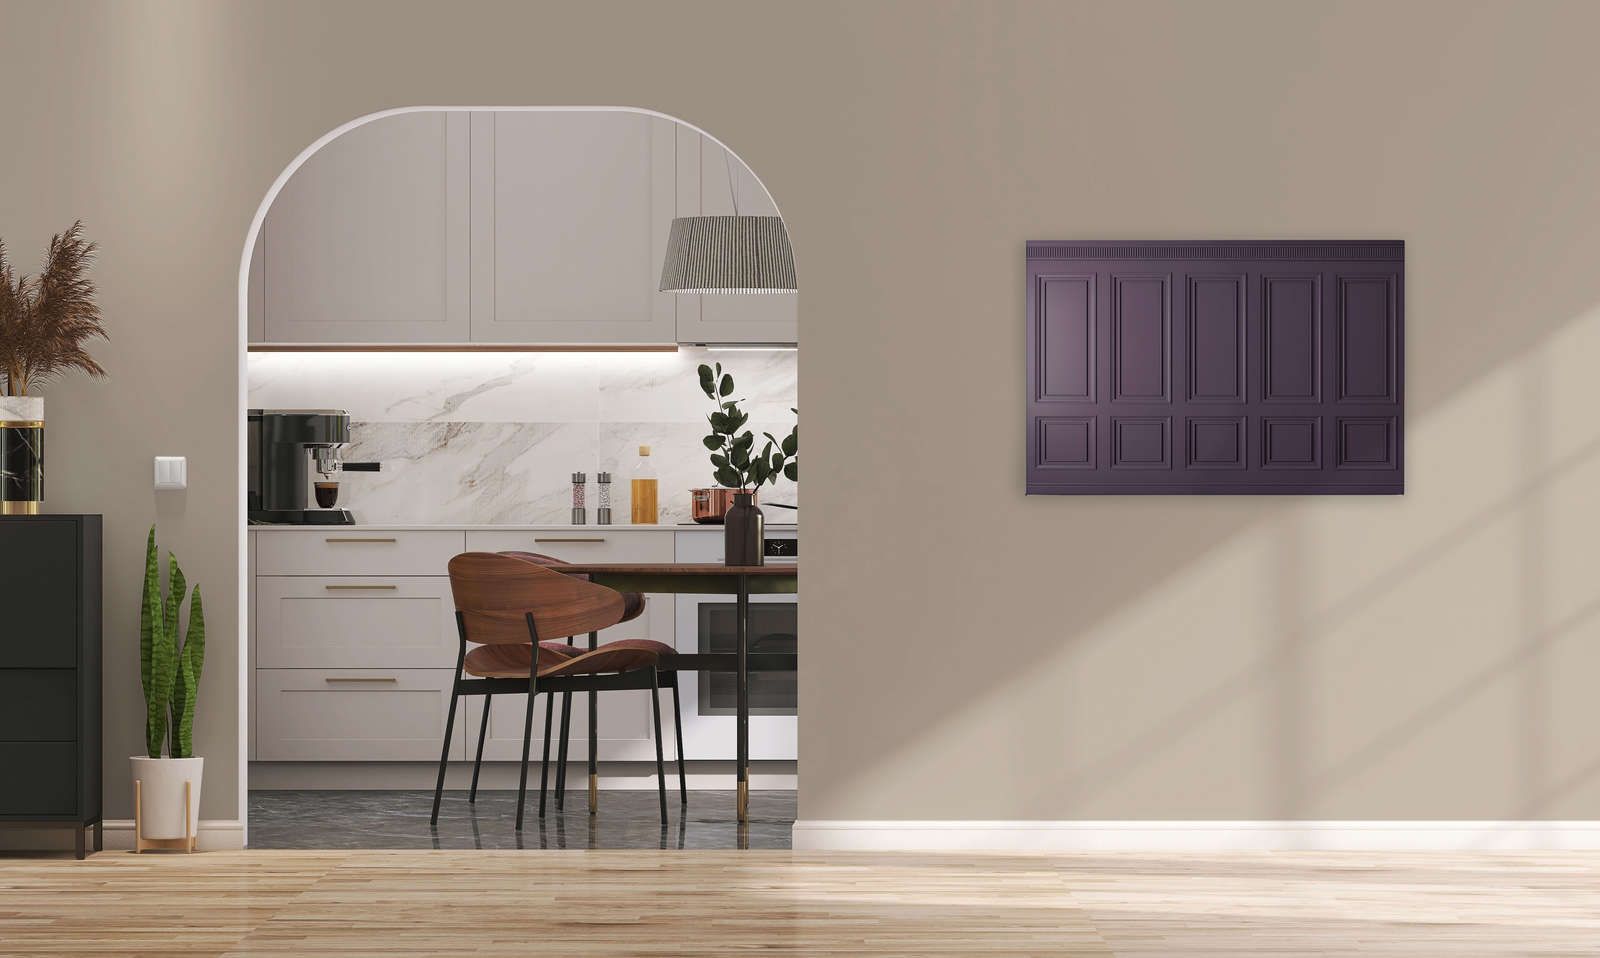             Kensington 3 - Quadro 3D in legno viola scuro, viola - 0,90 m x 0,60 m
        